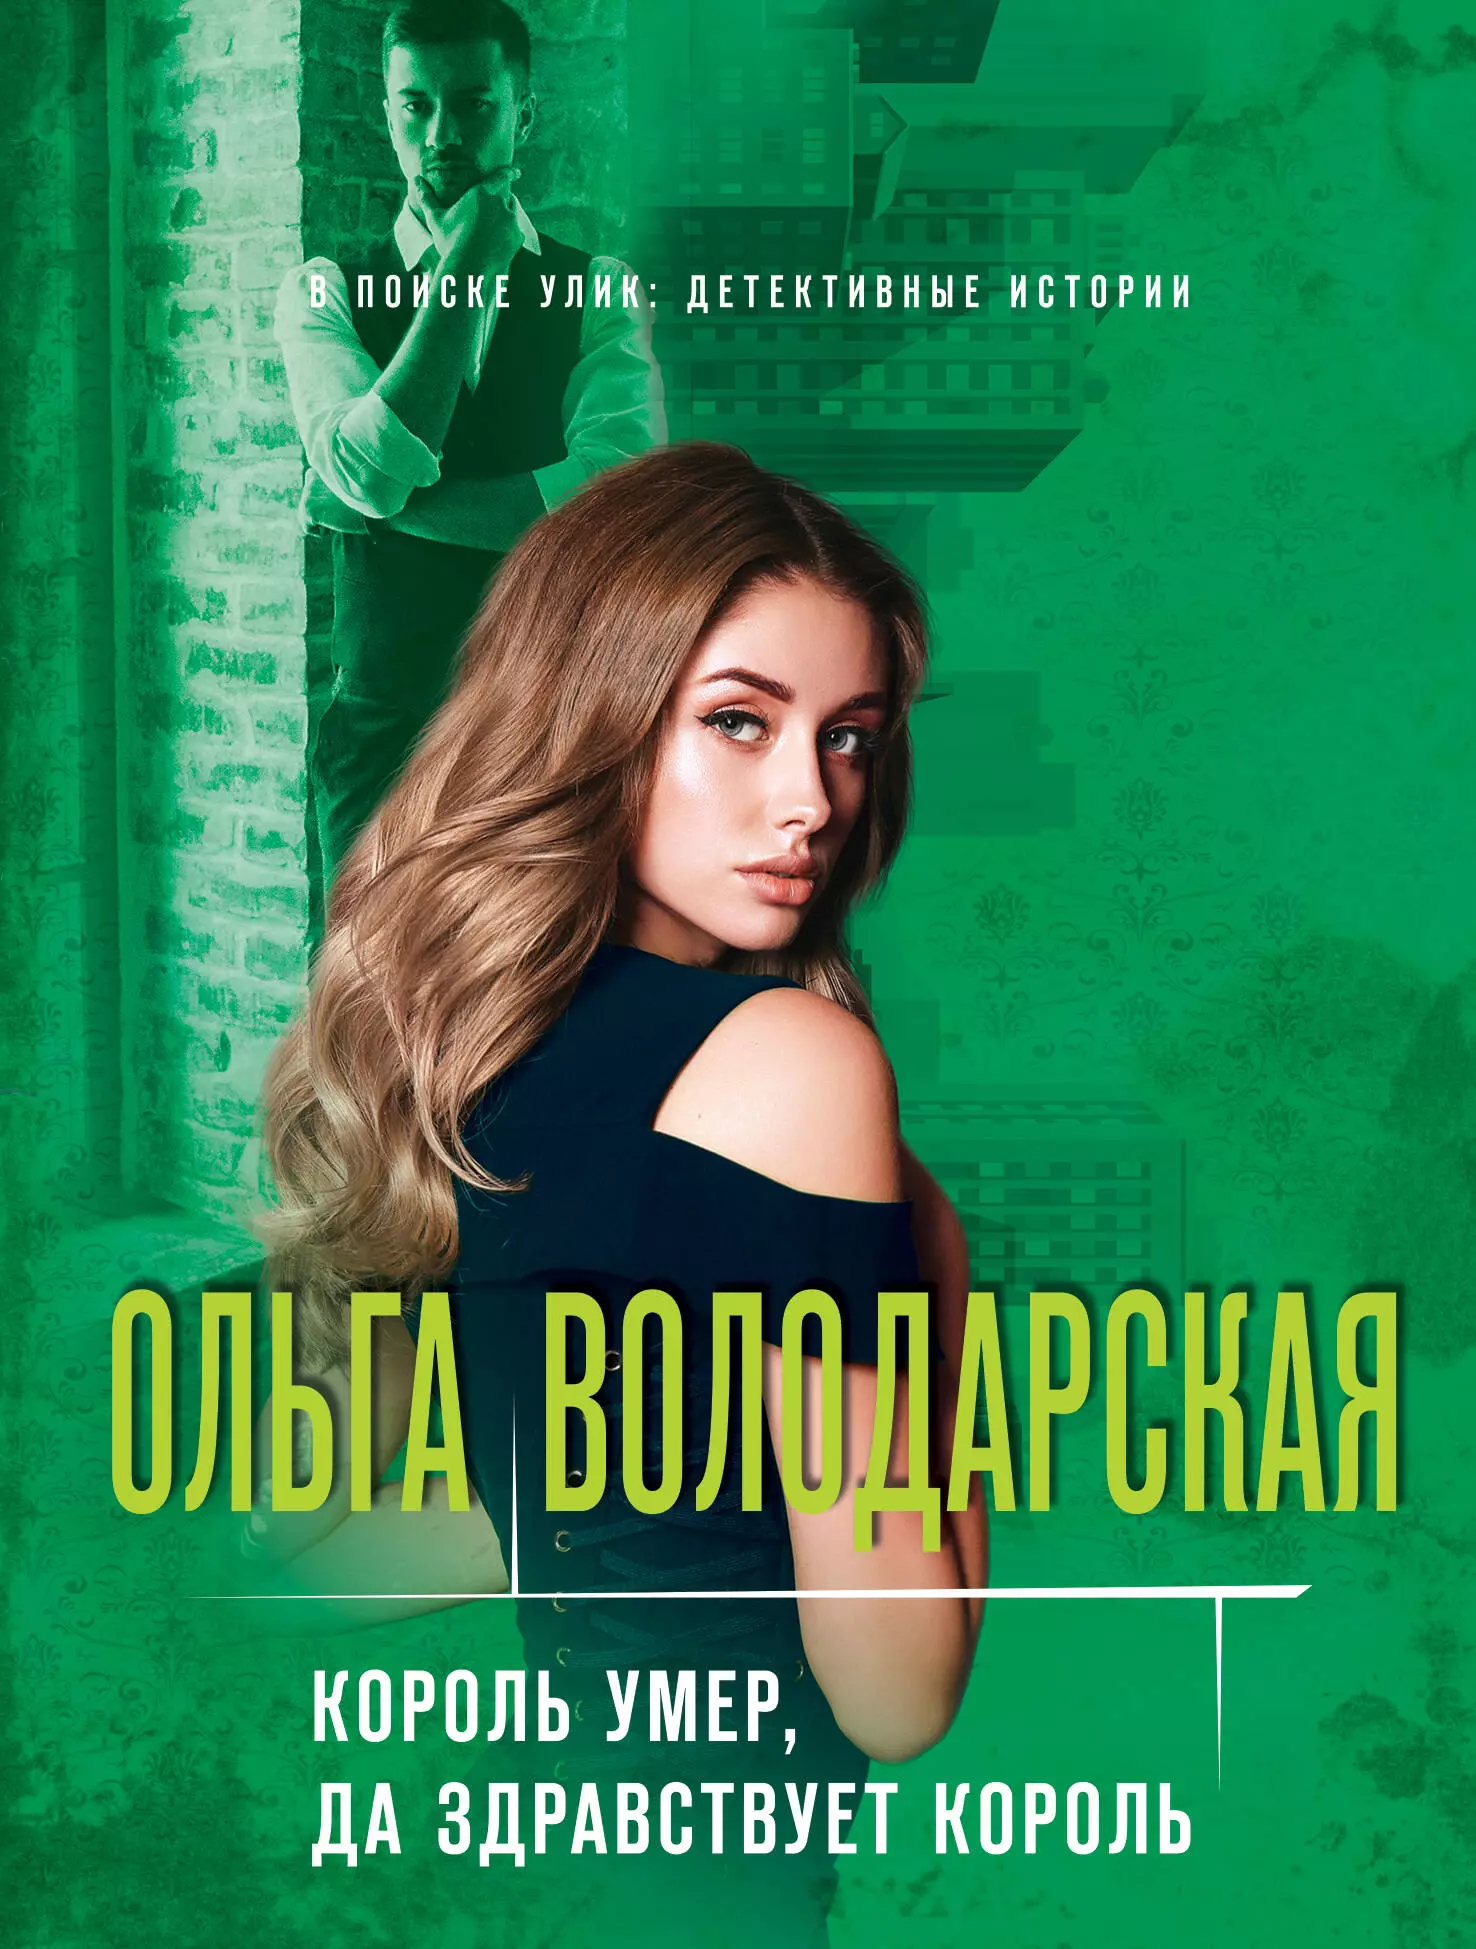 Володарская Ольга Геннадьевна - Король умер, да здравствует король